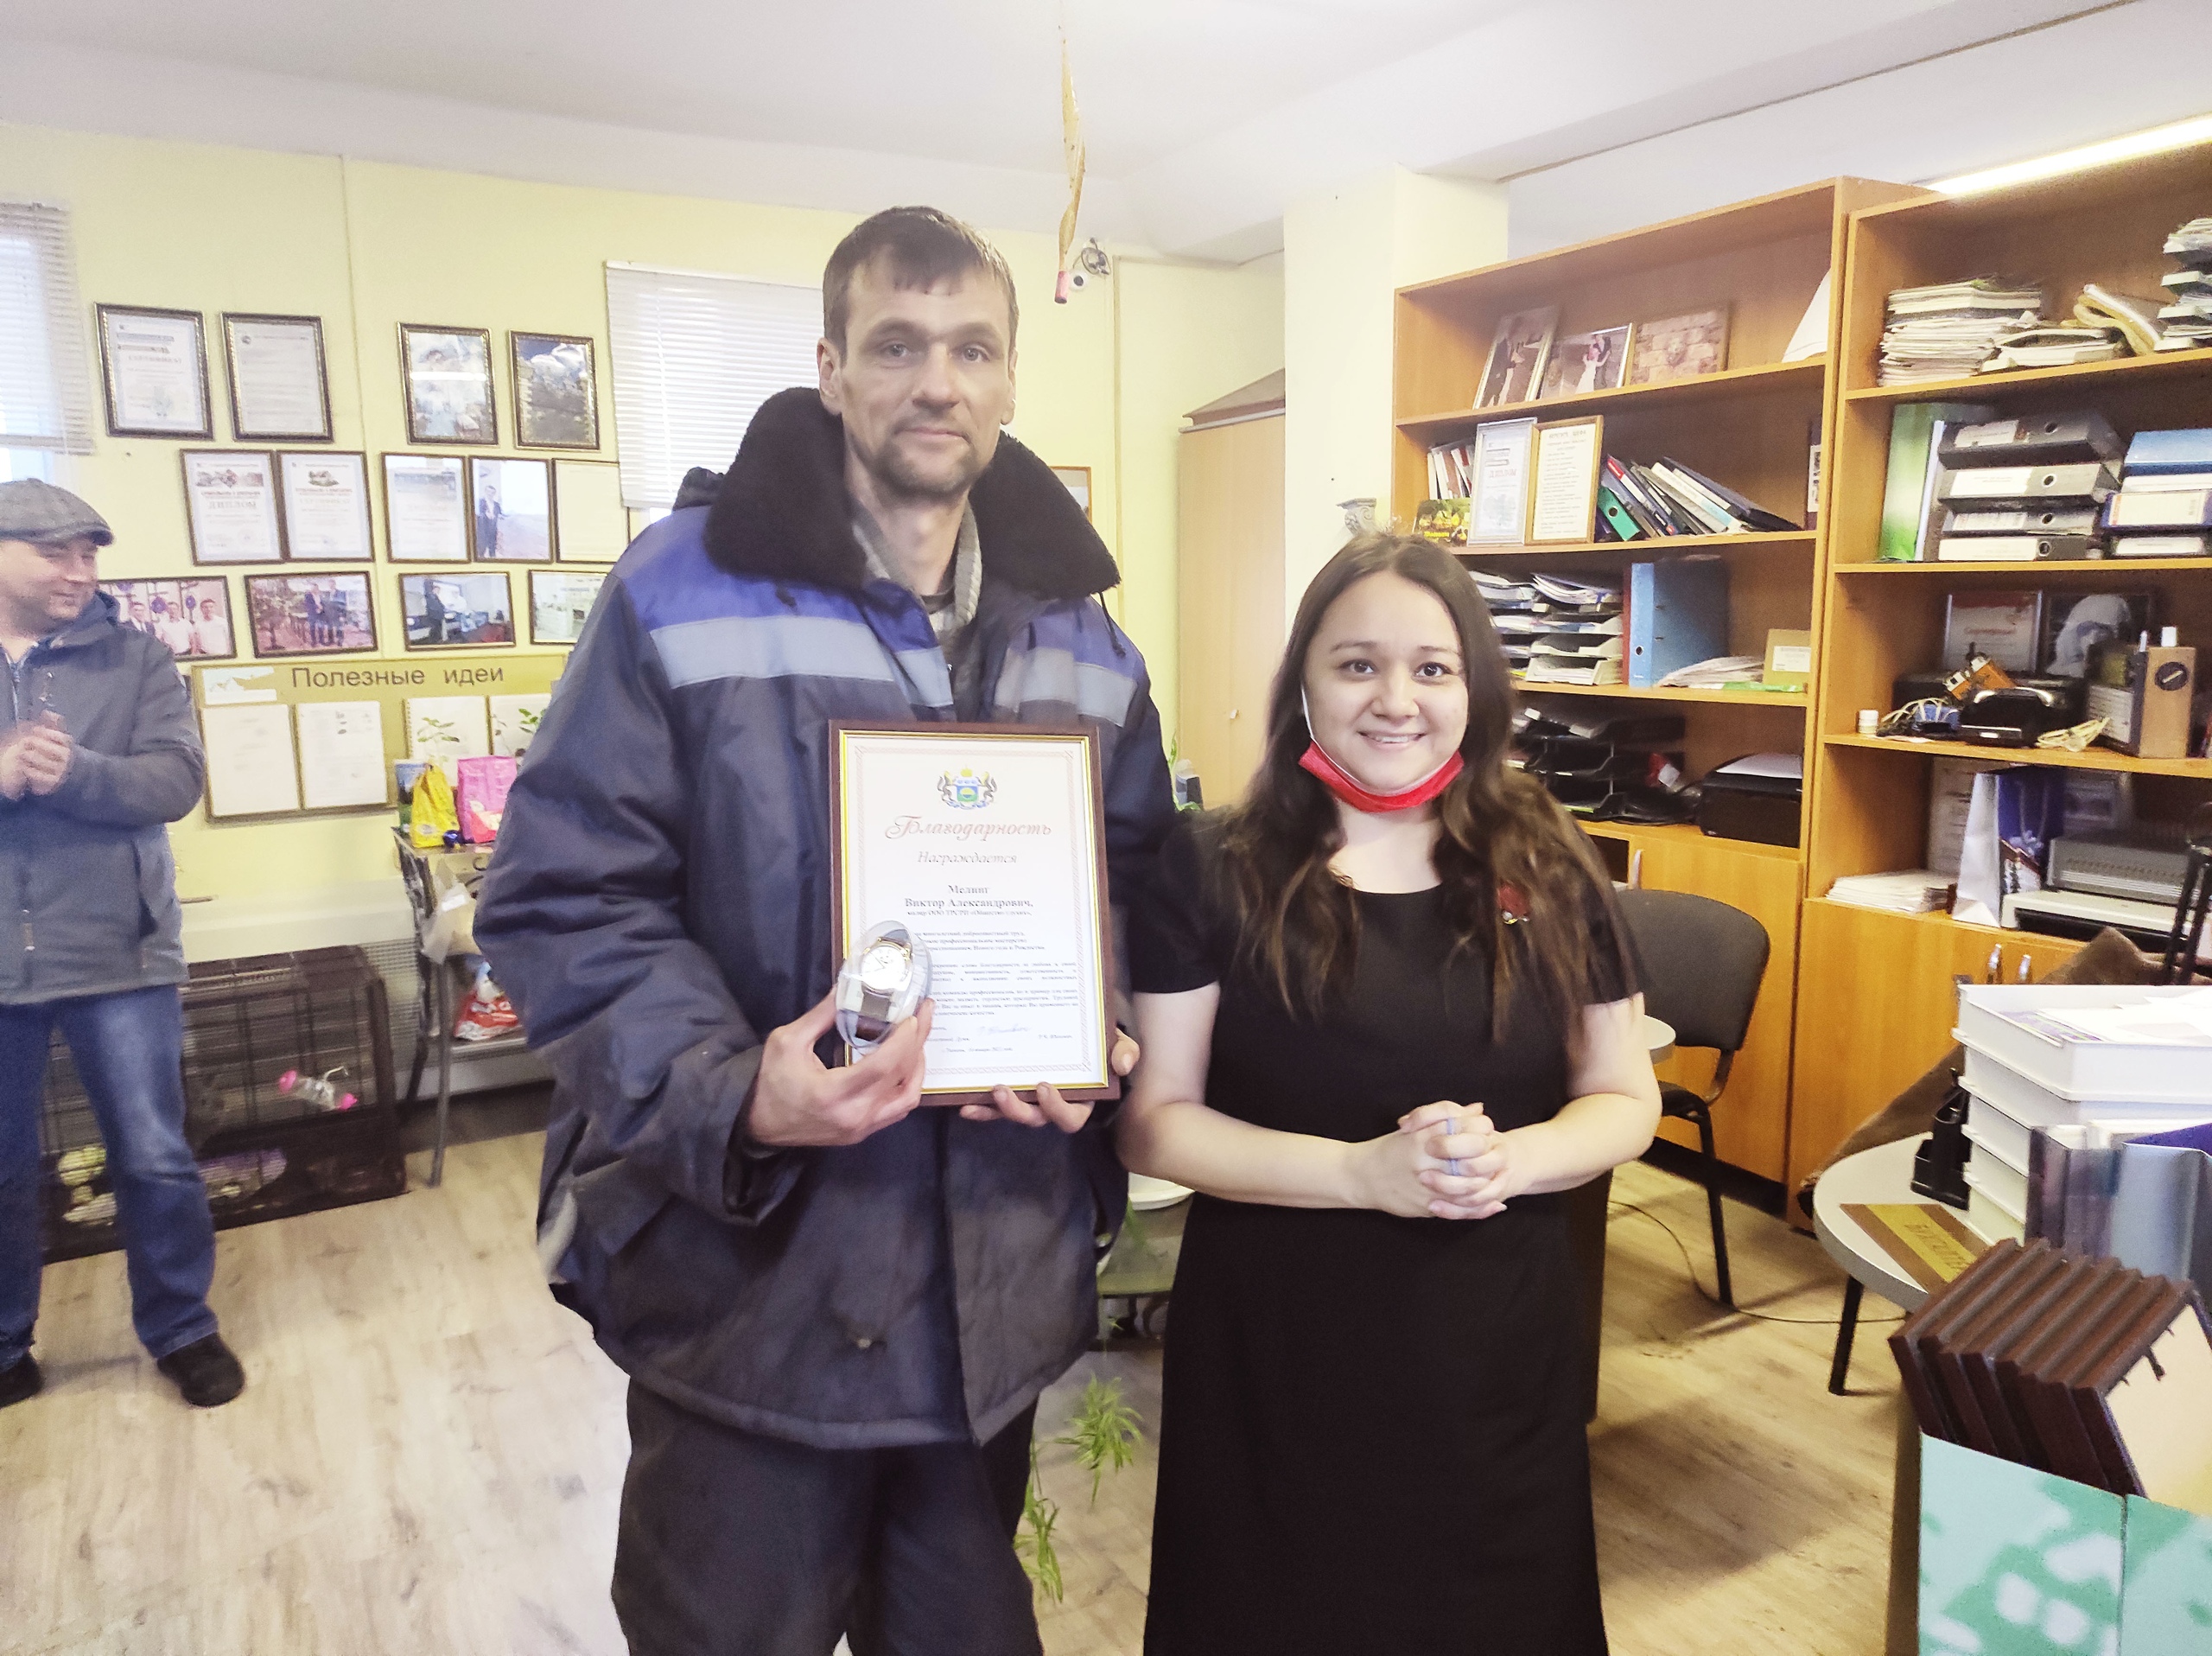 Регина Юхневич поздравила трудовой коллектив социально-реабилитационного предприятия «Общество глухих»